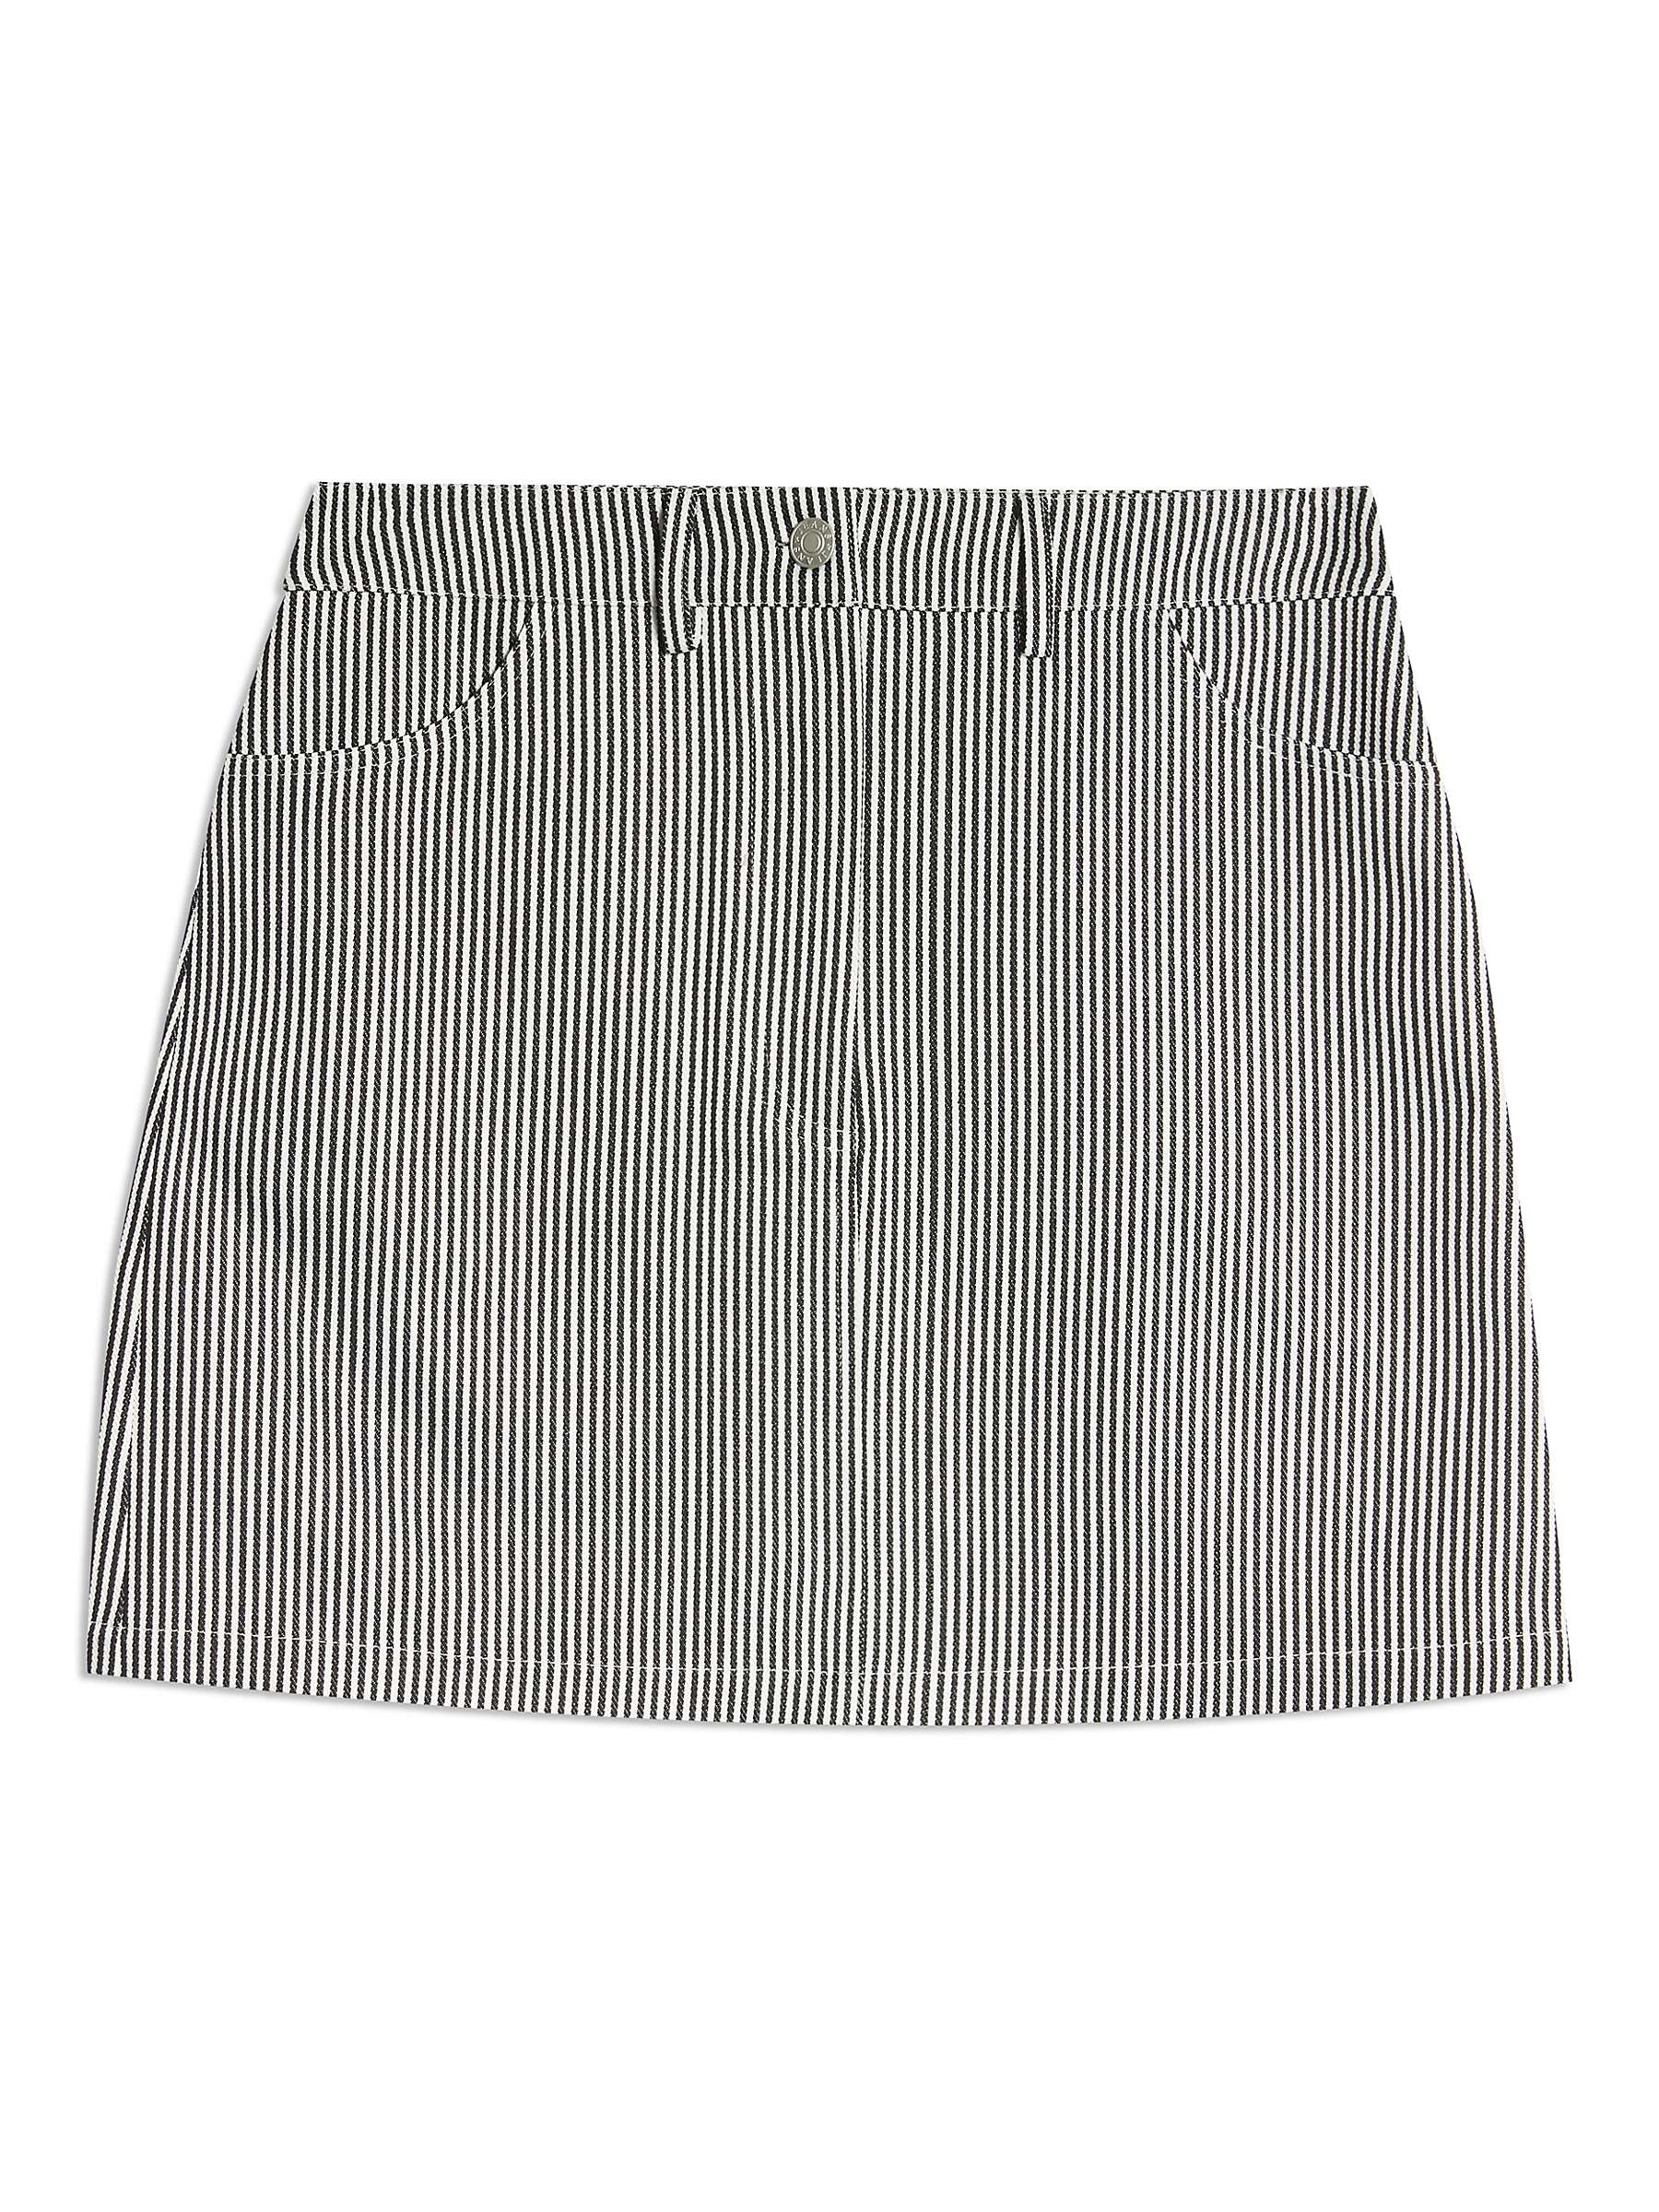 Buy Albaray Ticking Stripe Mini Skirt, Black/White Online at johnlewis.com